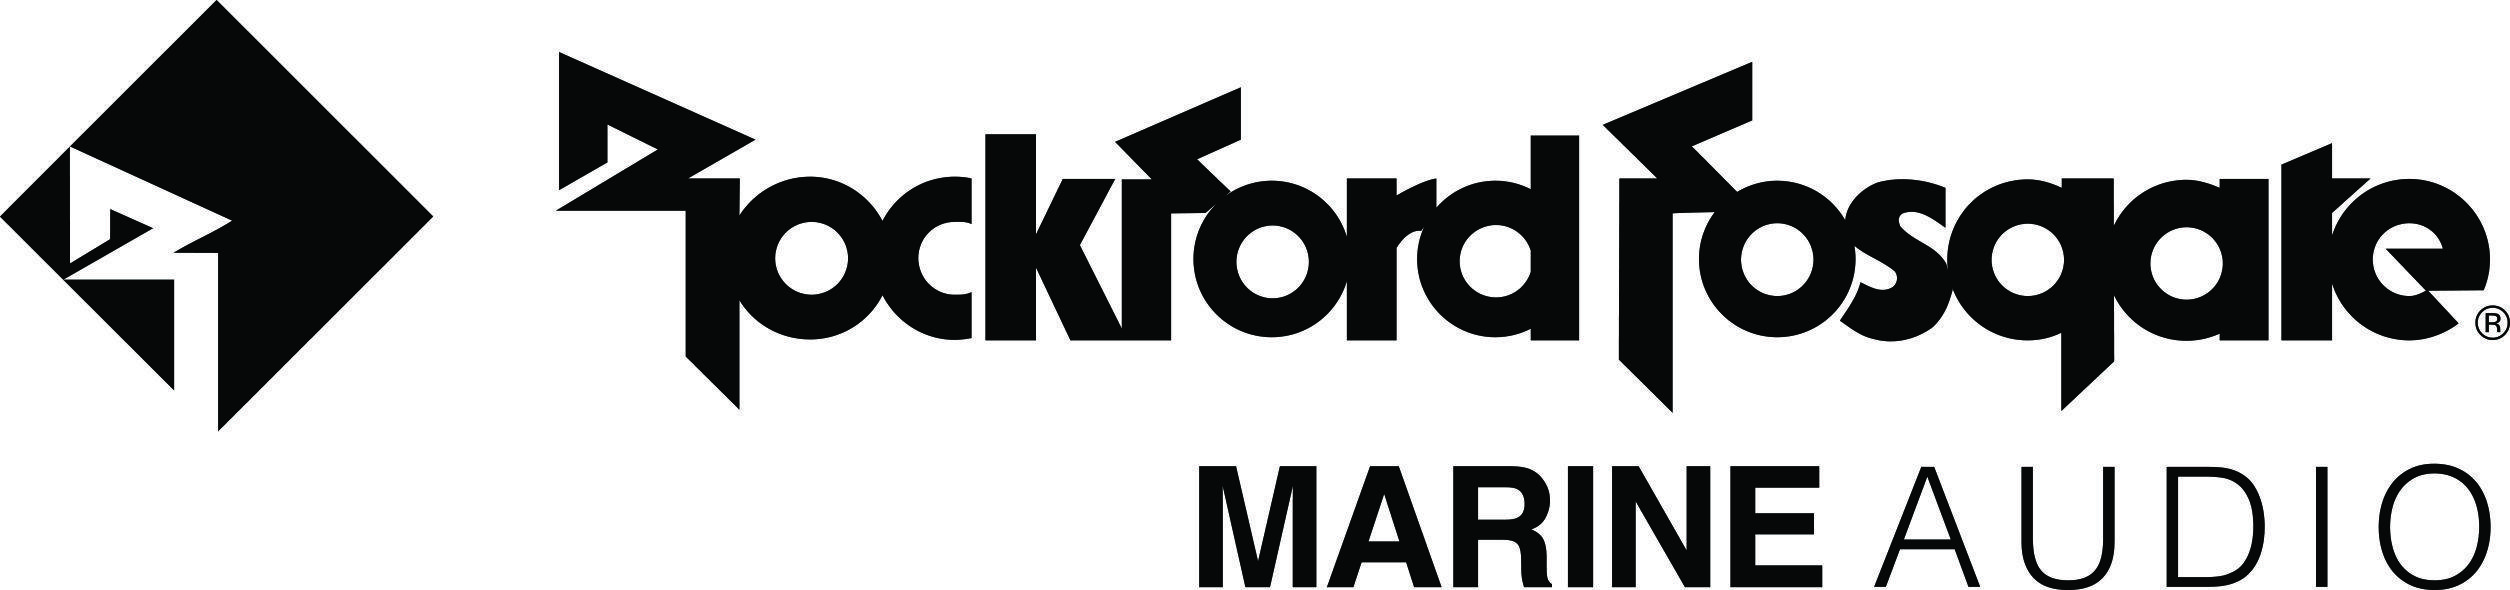 Rockford Logo - Rockford fosgate Logos